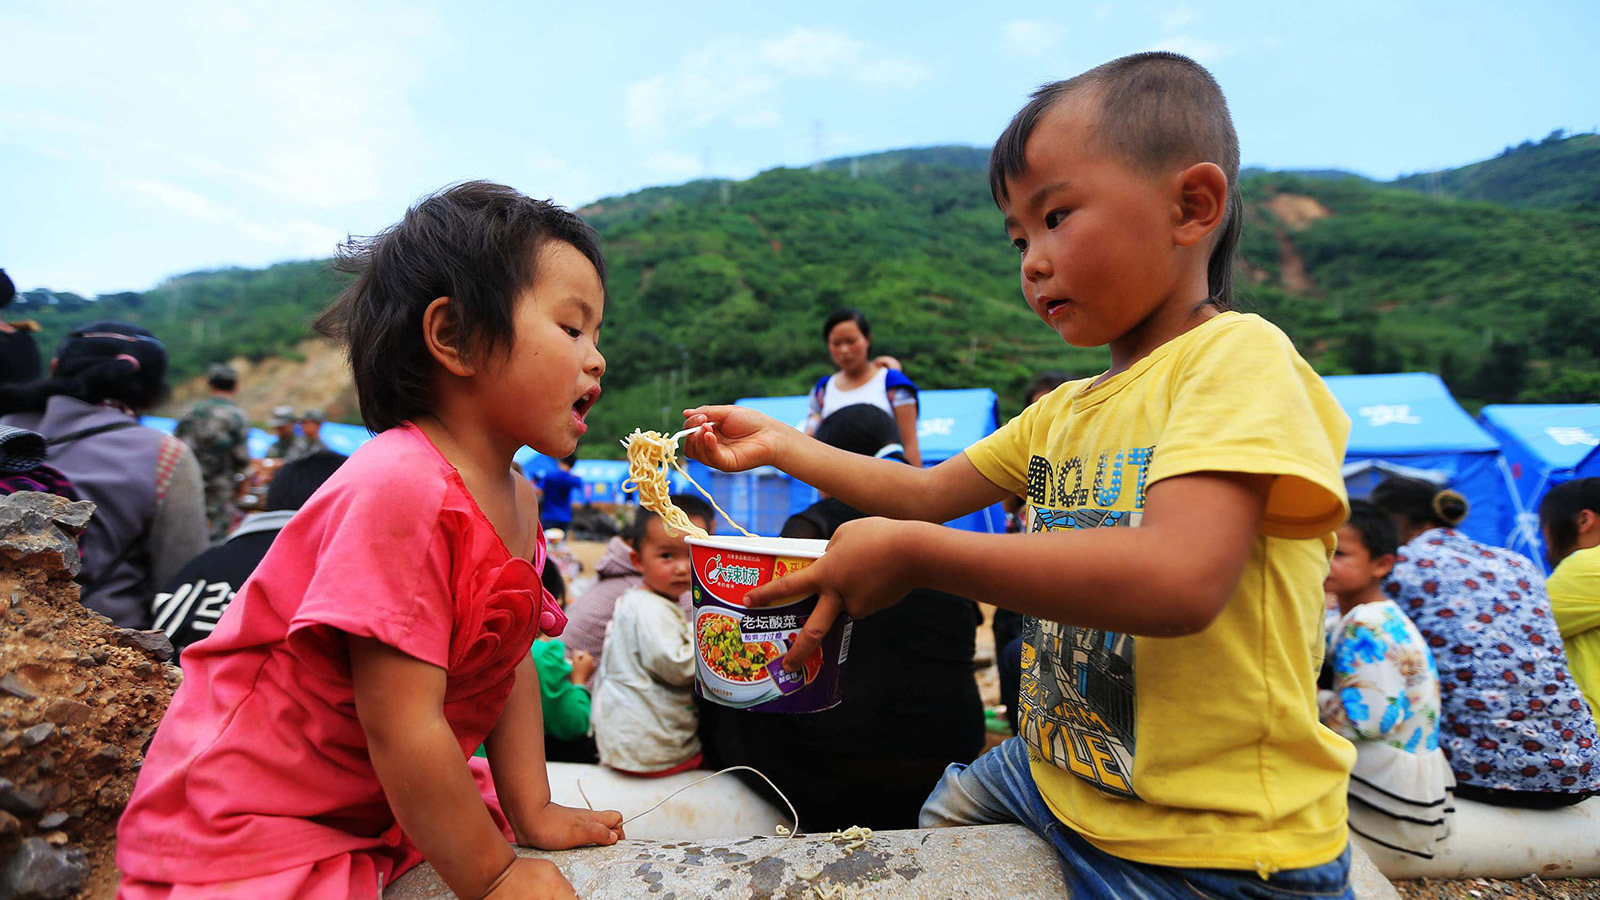 8月5日，云南省昭通市鲁甸县龙头山镇四岁的小男孩熊鑫（右）在喂邻居家的小女孩吃方便面。新华社记者邢广利摄